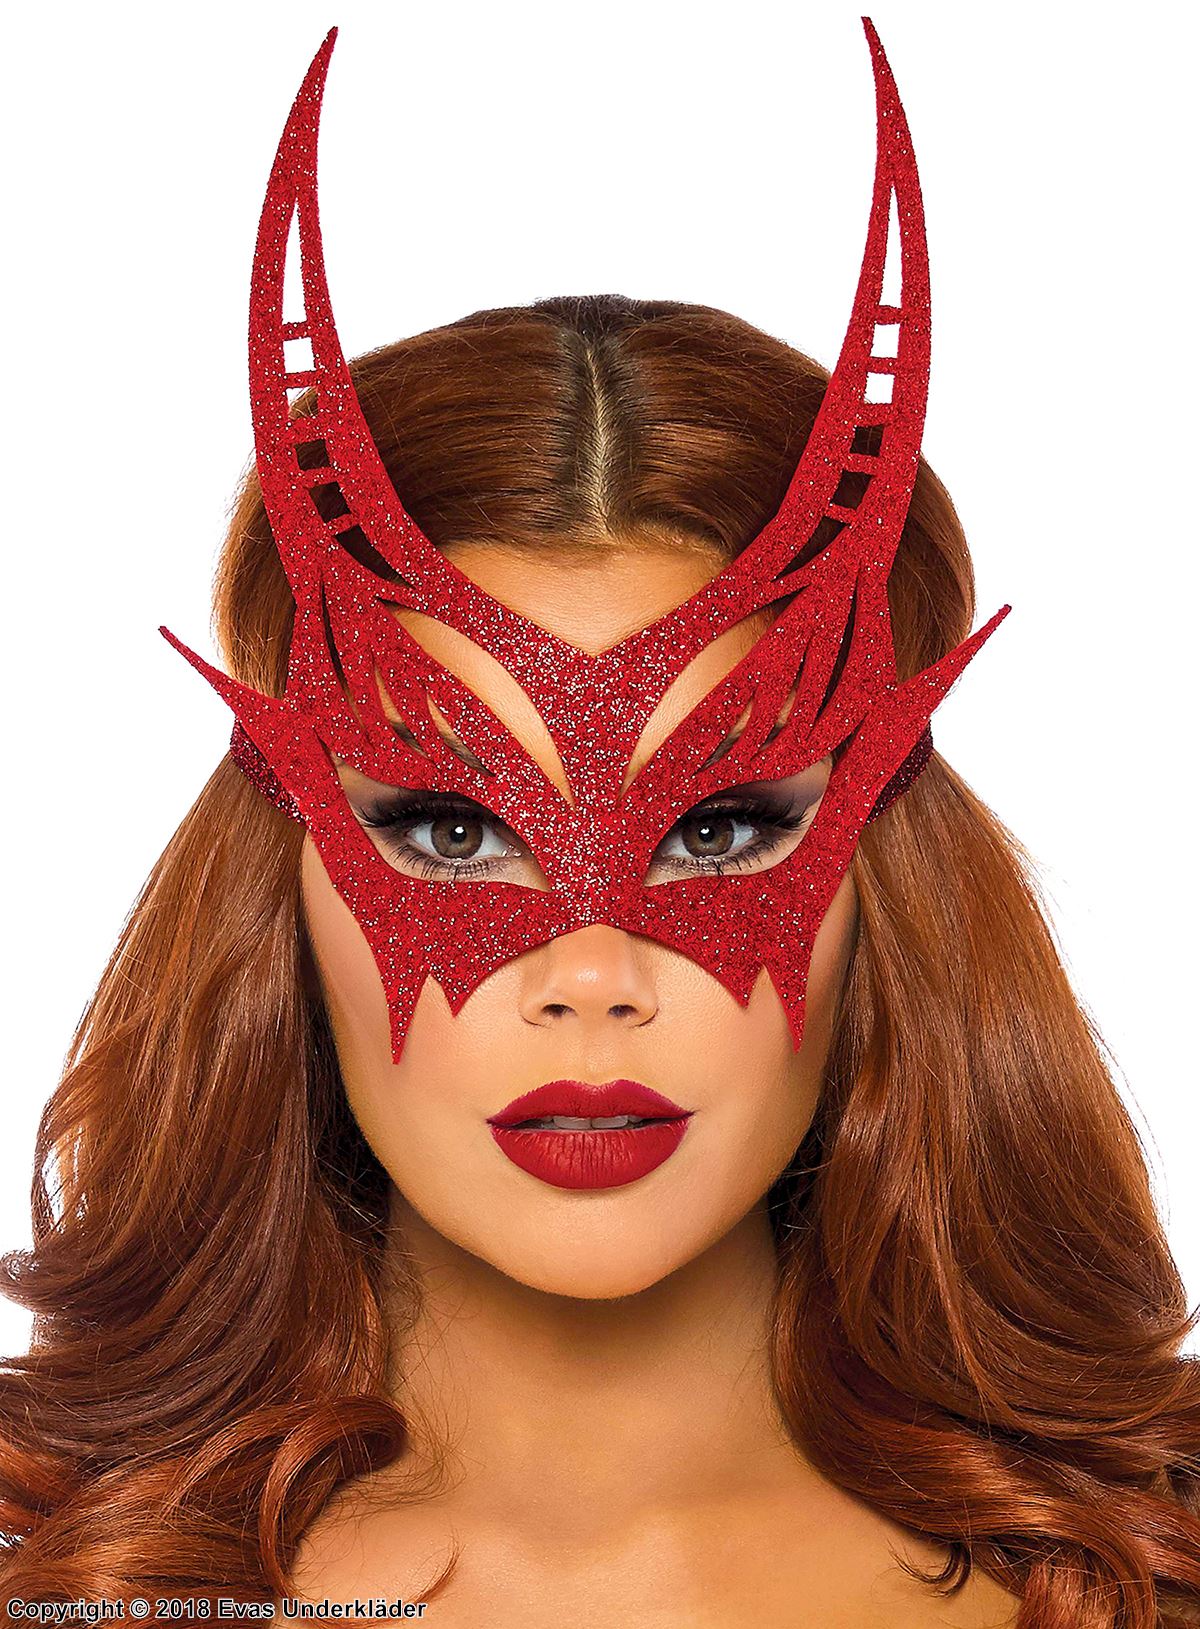 Female devil, costume mask, glitter, horns